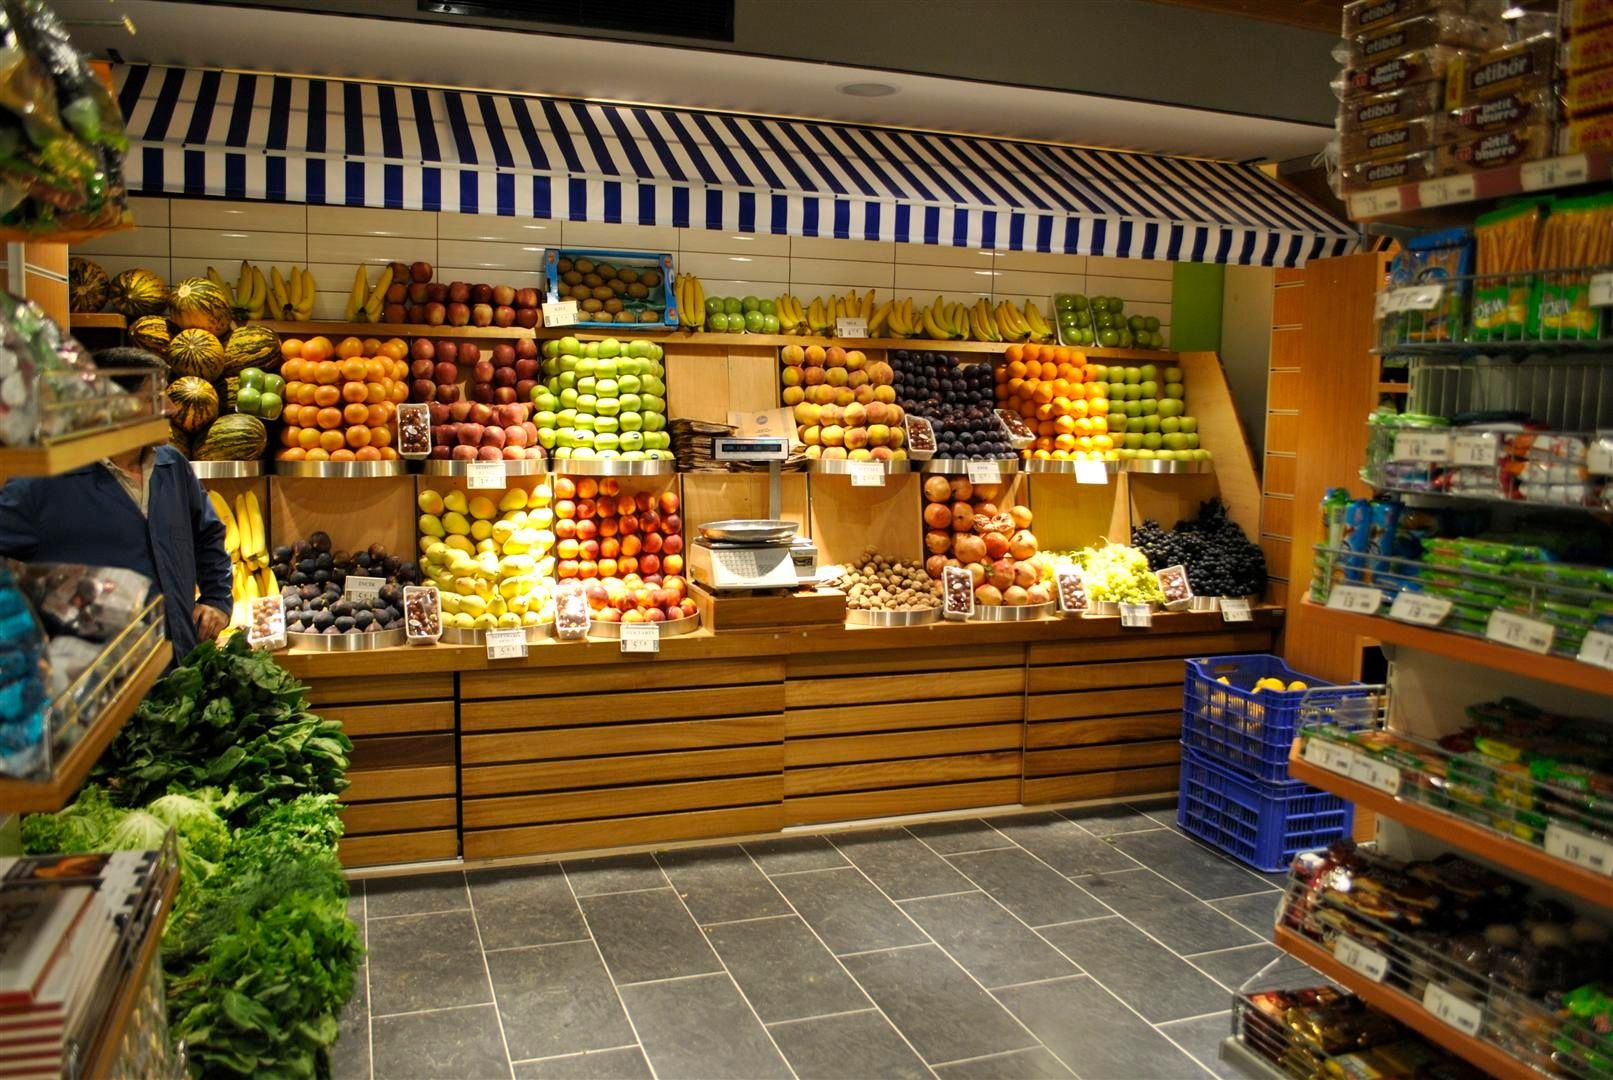 蔬菜水果店